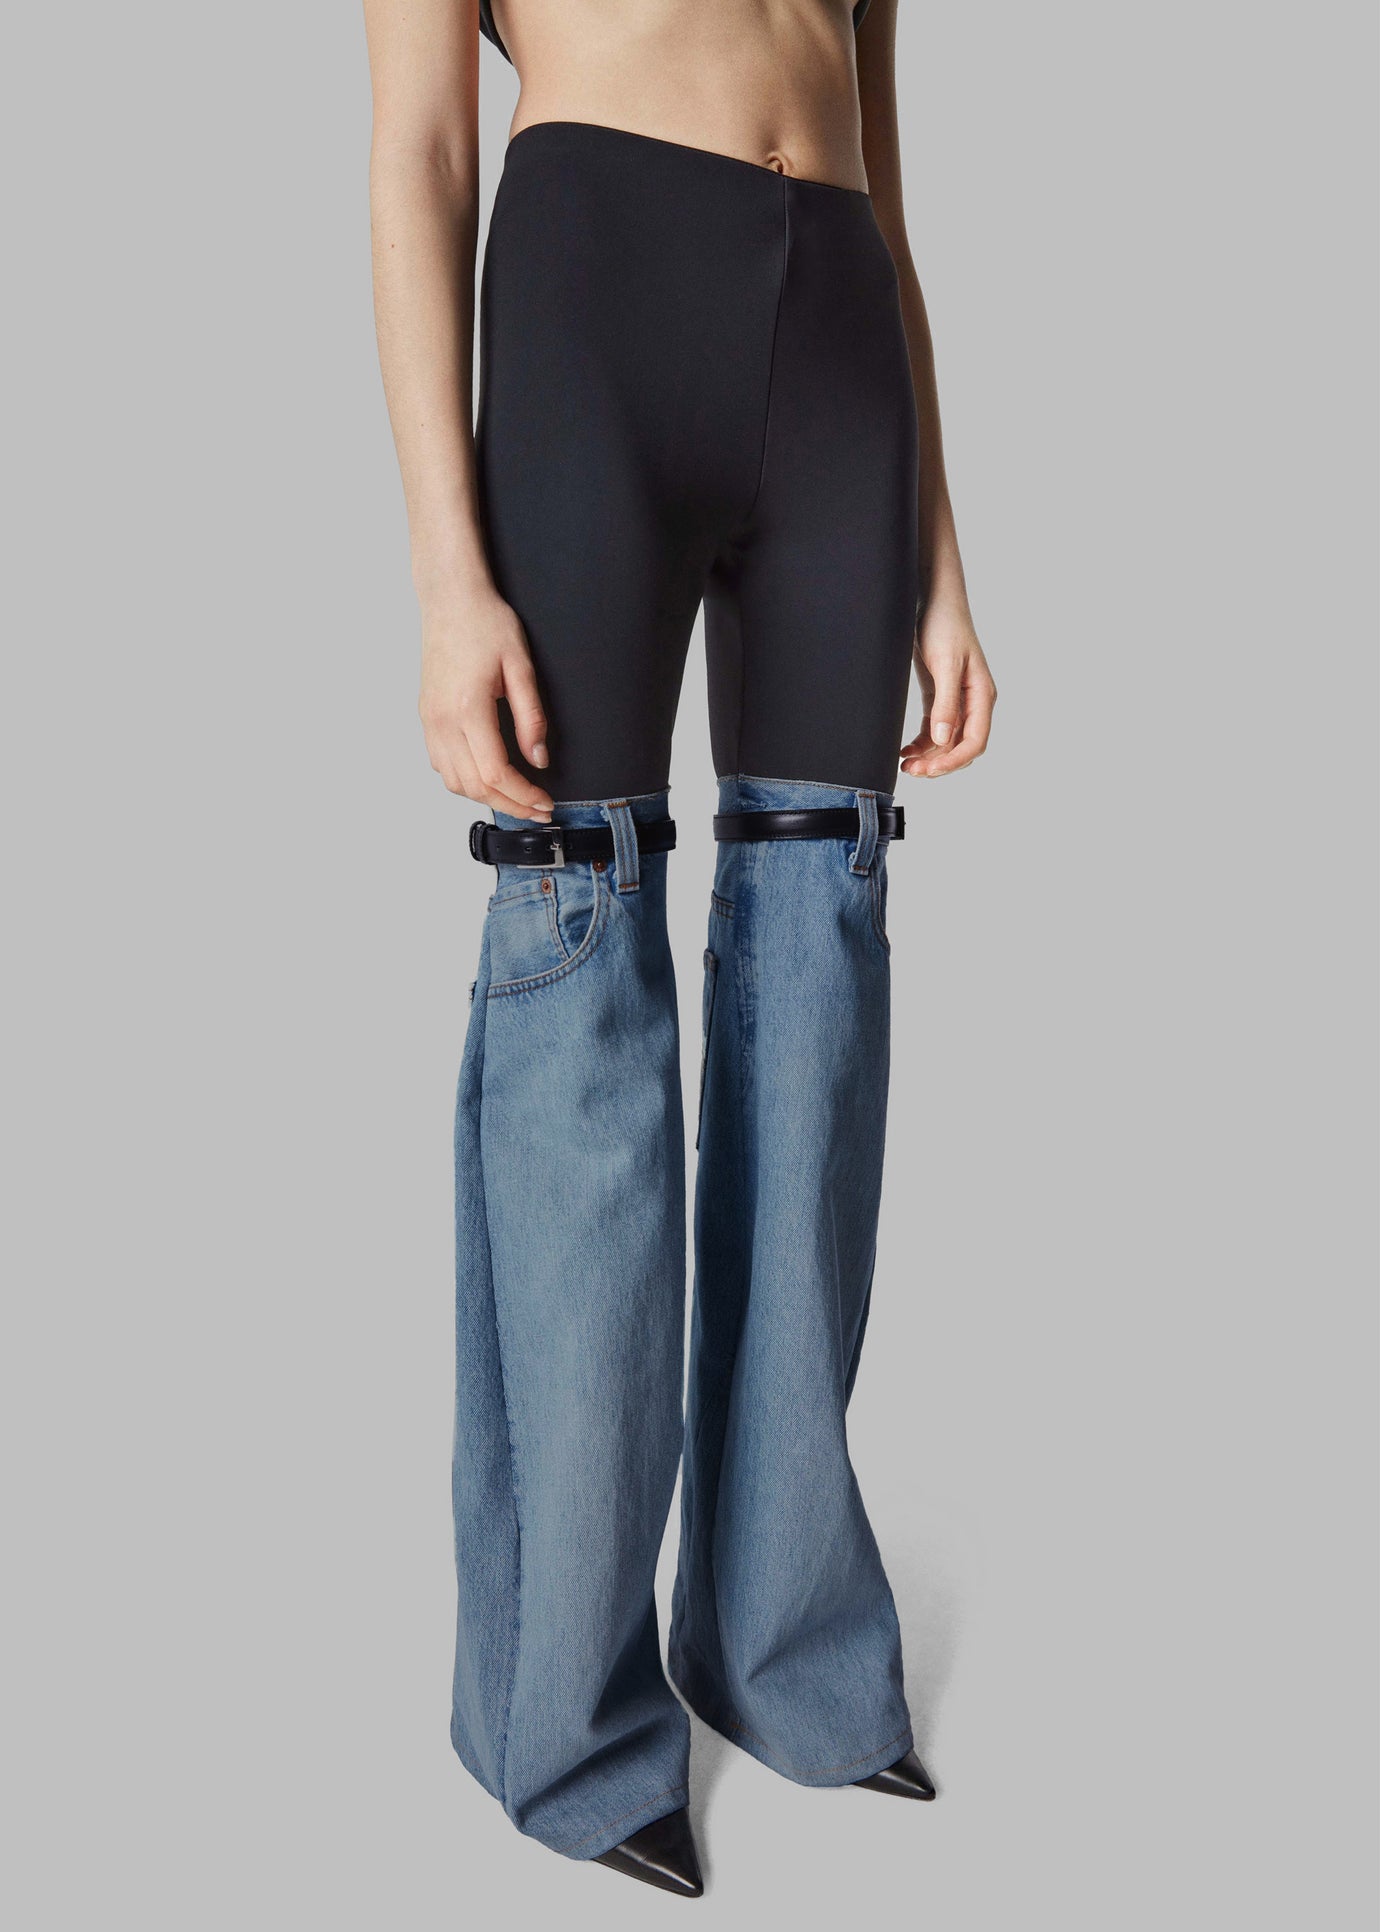 Coperni Hybrid Flare Denim Trousers - Black/Washed Blue